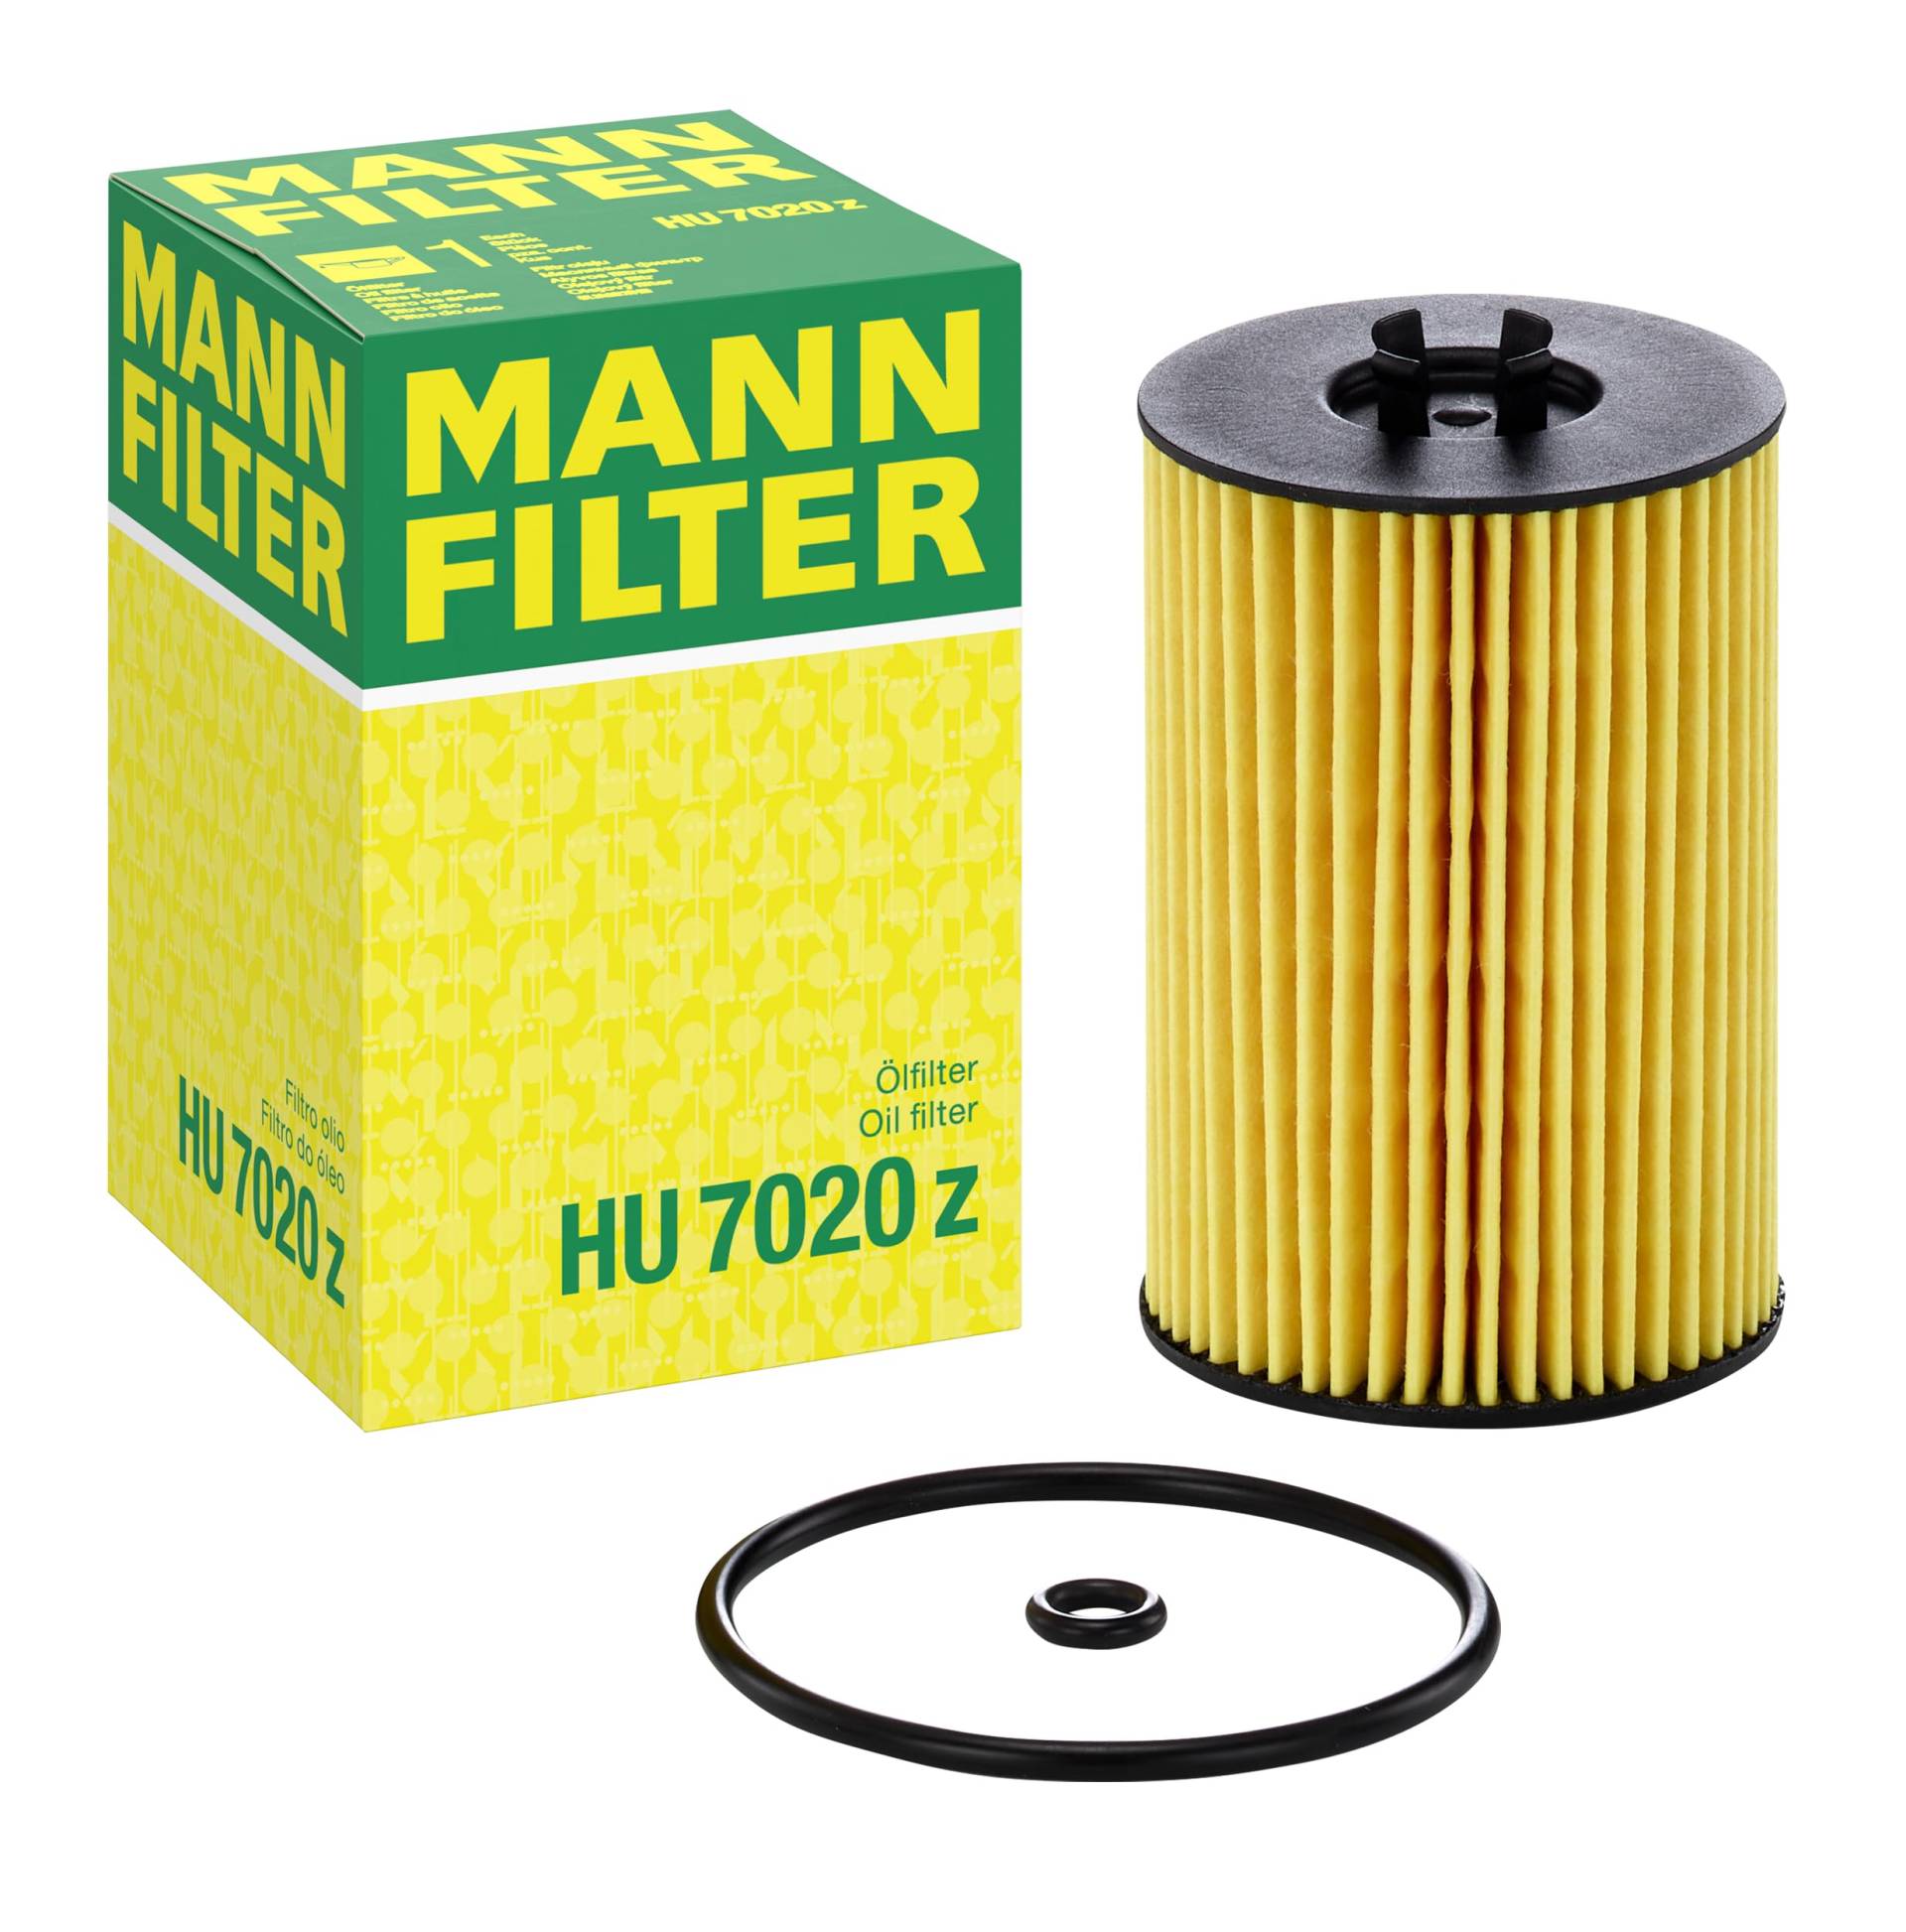 MANN-FILTER HU 7020 z Ölfilter – Ölfilter Satz mit Dichtung / Dichtungssatz – Für PKW von MANN-FILTER